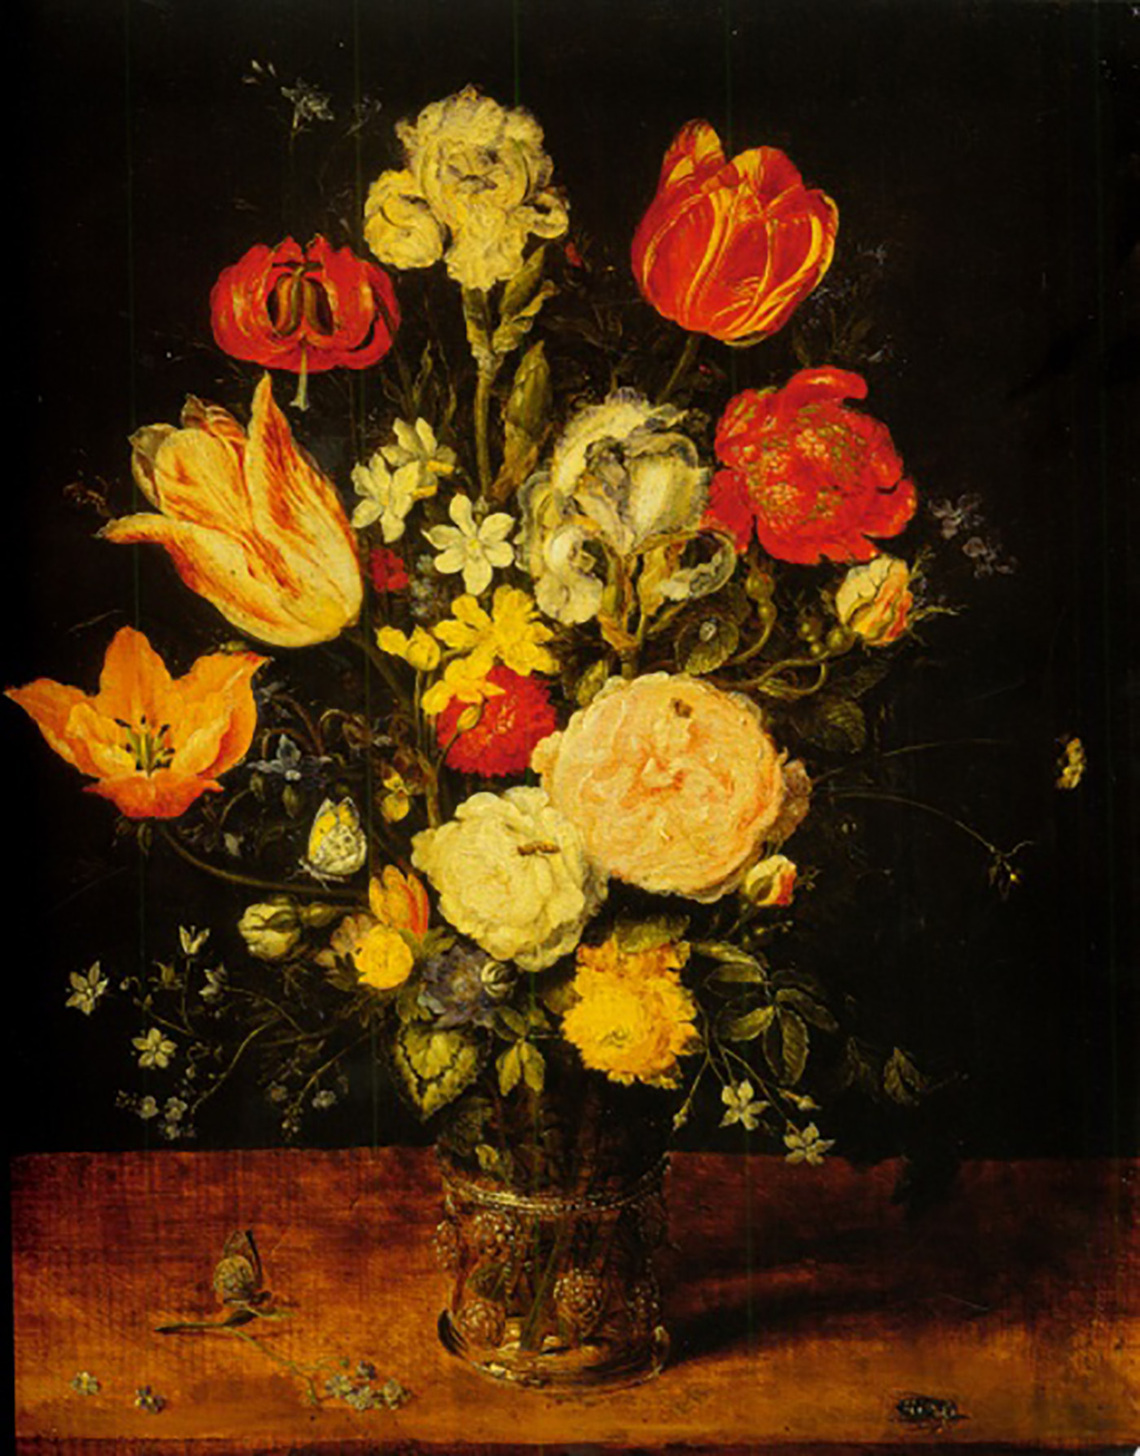 Flowers in a Glass Vase (Zurich)